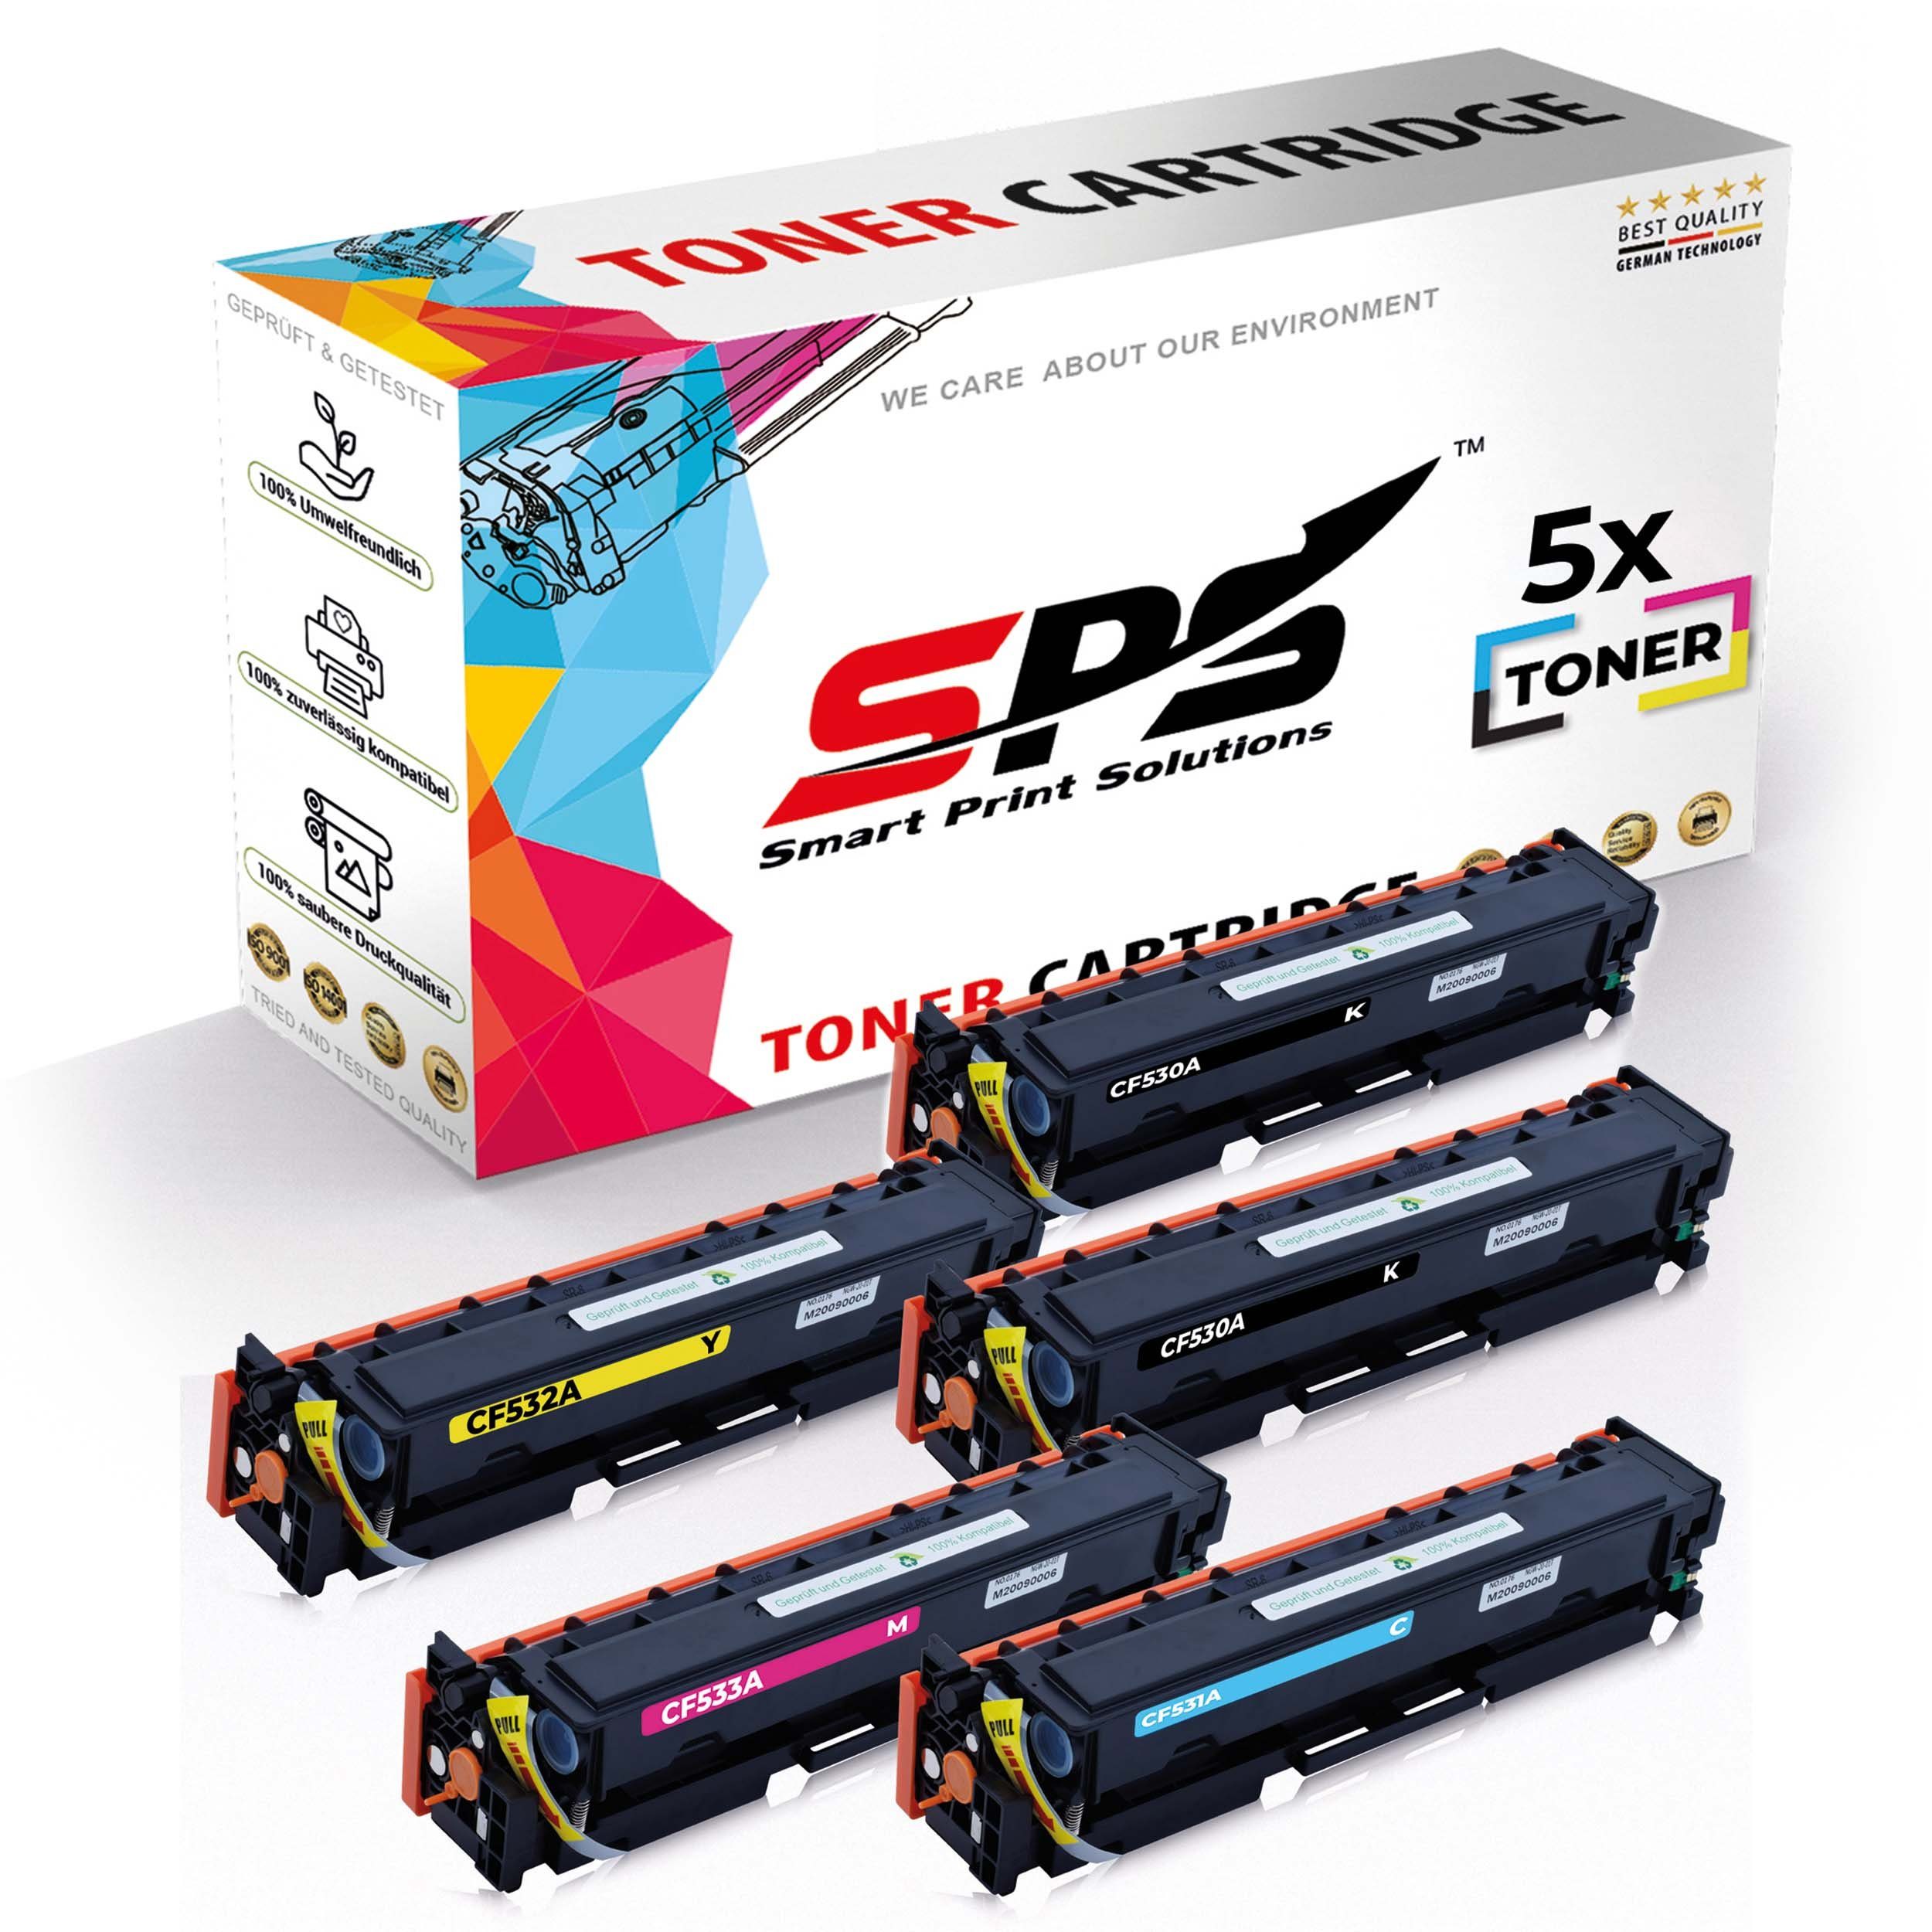 SPS Tonerkartusche 5x Multipack Set Kompatibel für HP Color LaserJet CM 2320 EI MFP (304A, (5er Pack)